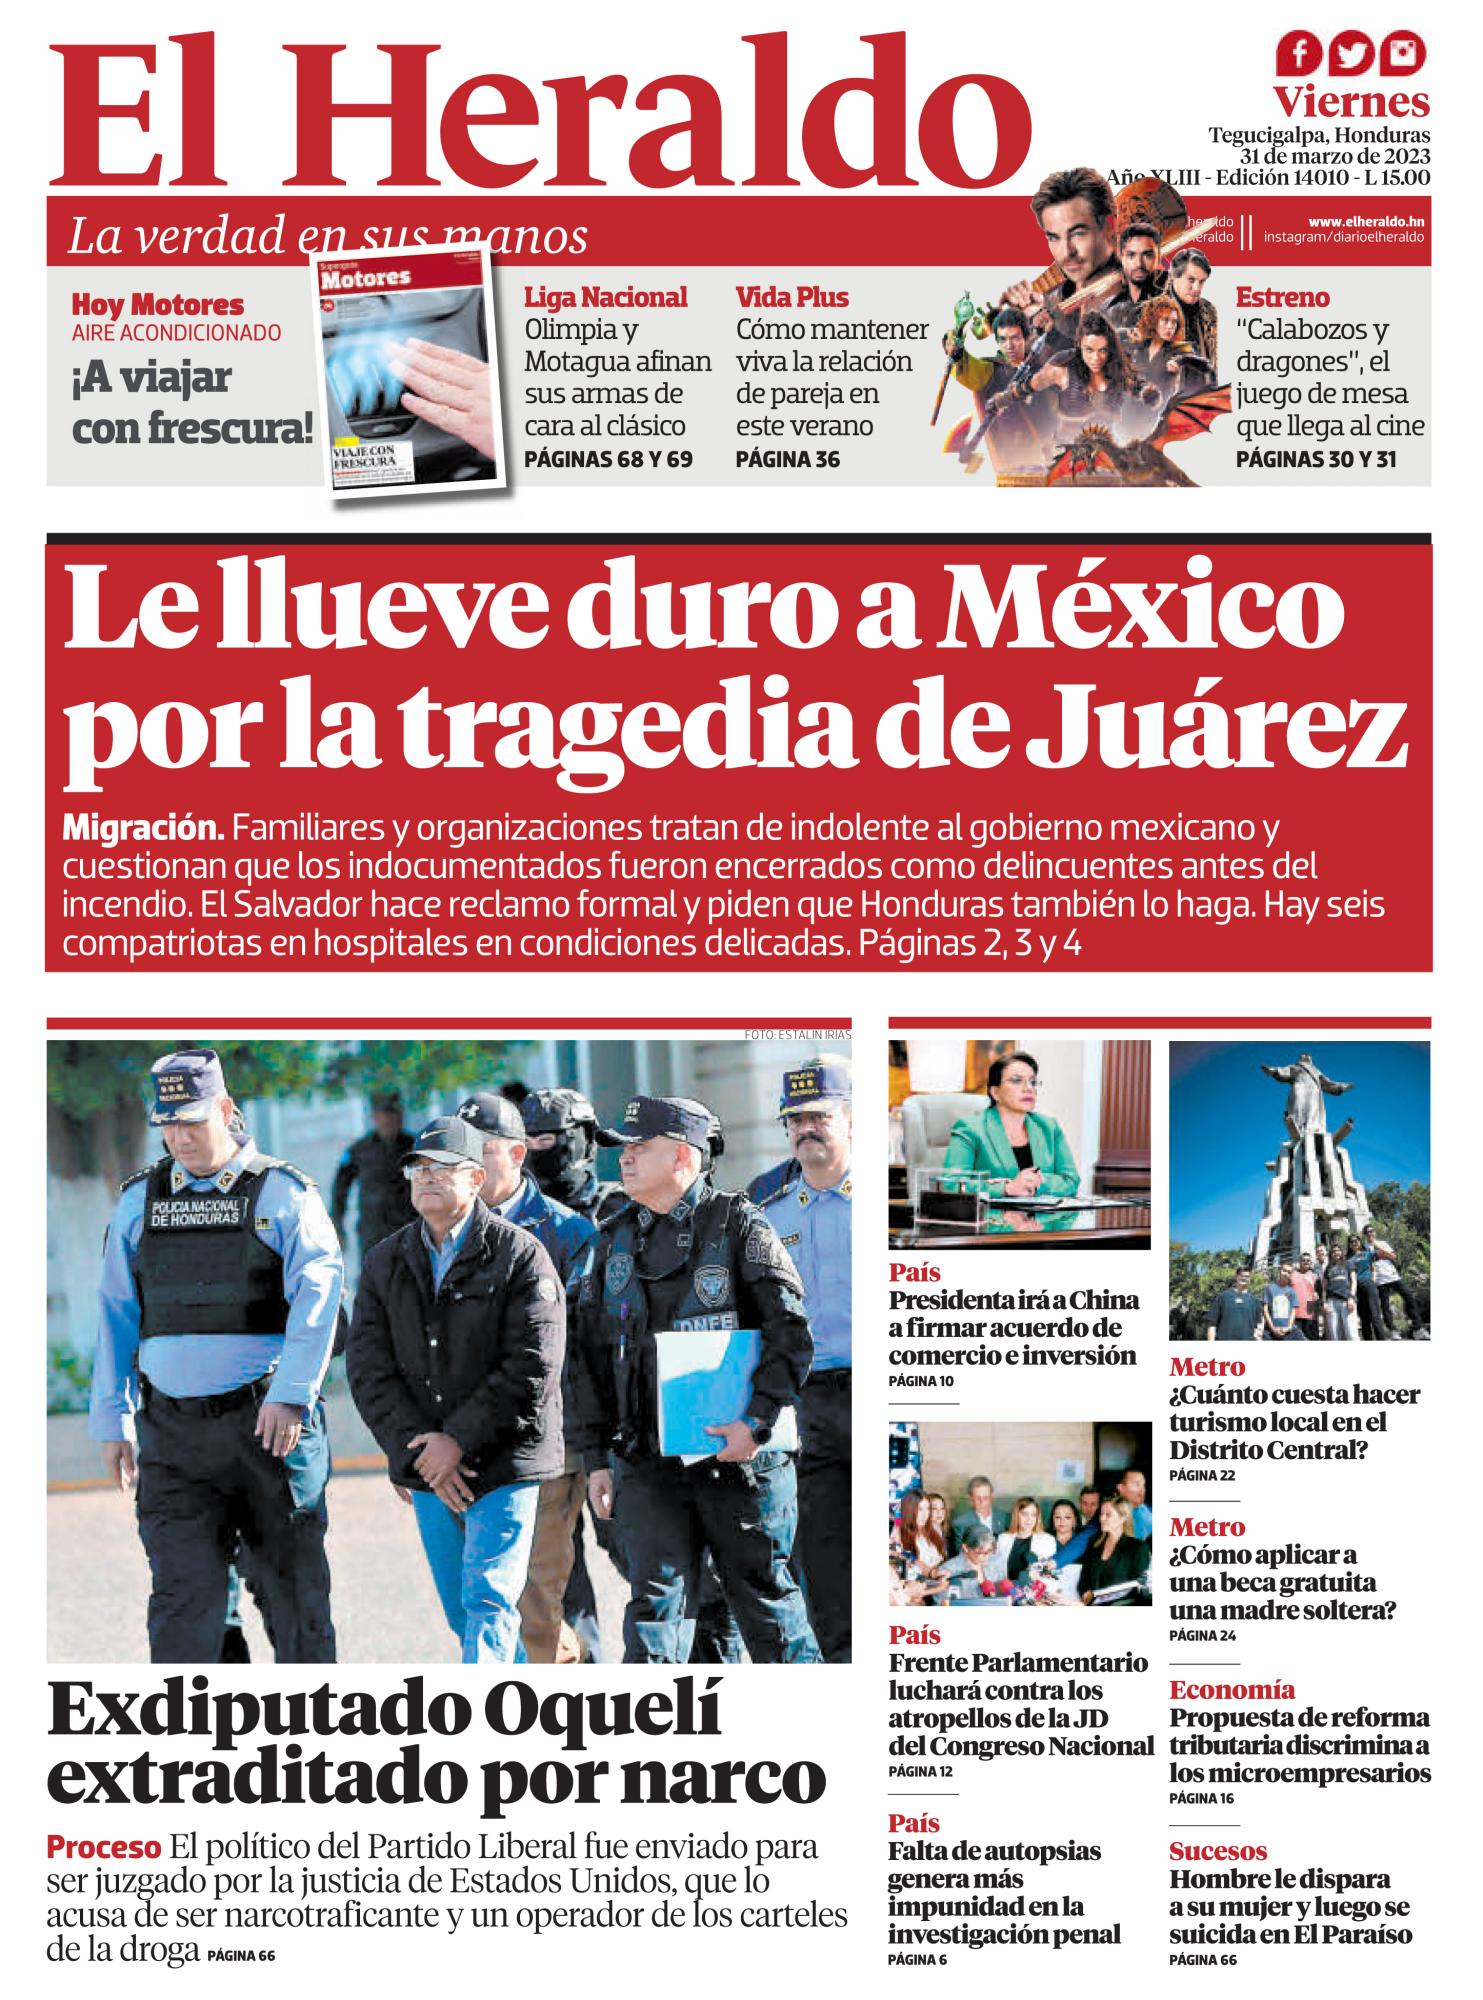 Le llueve duro a México por la tragedia de Juárez